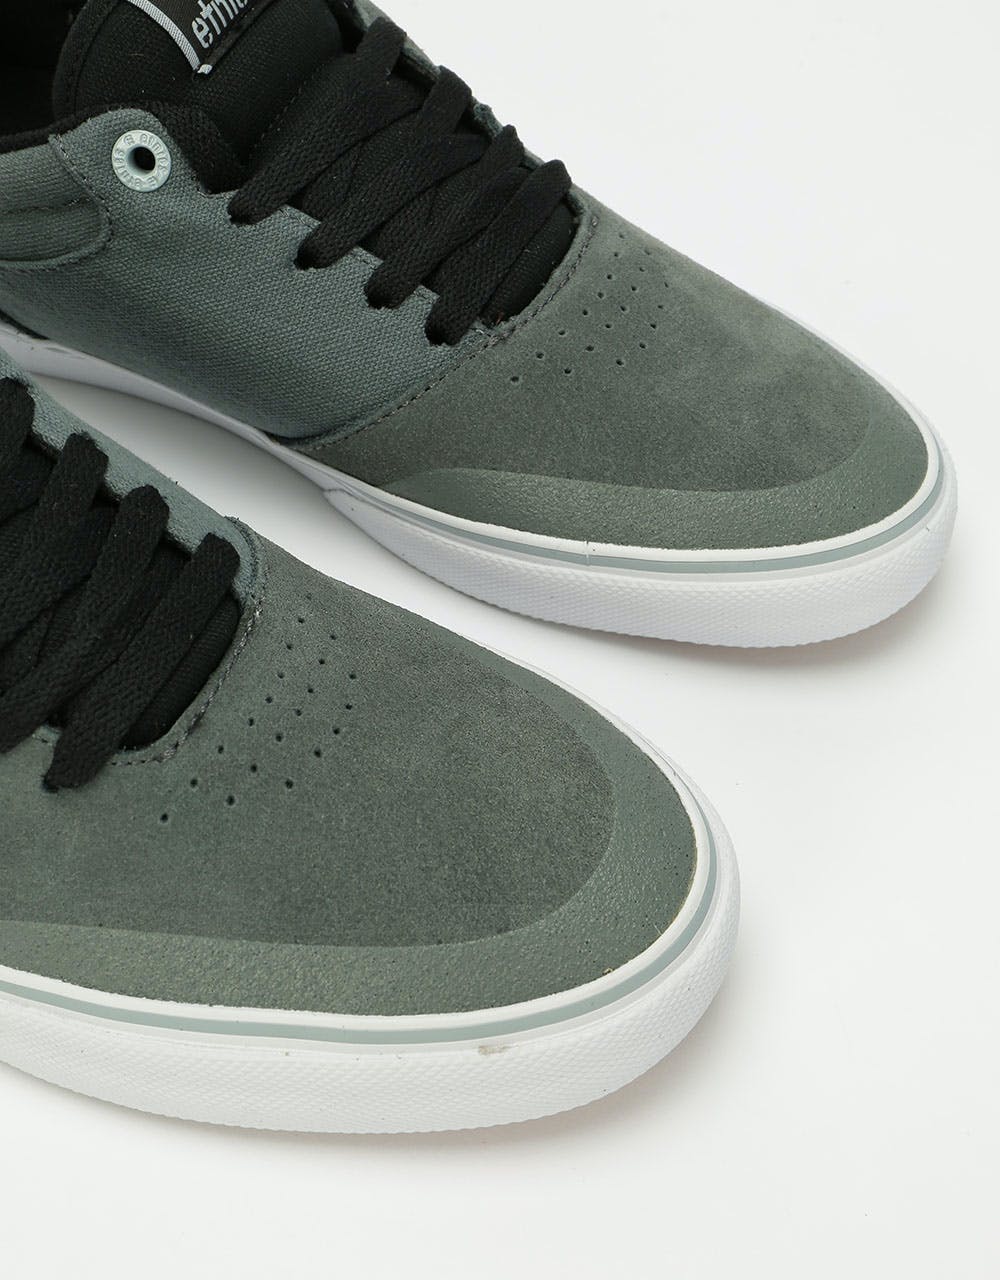 Etnies Marana Vulc Skate Shoes - Dark Grey/Blue